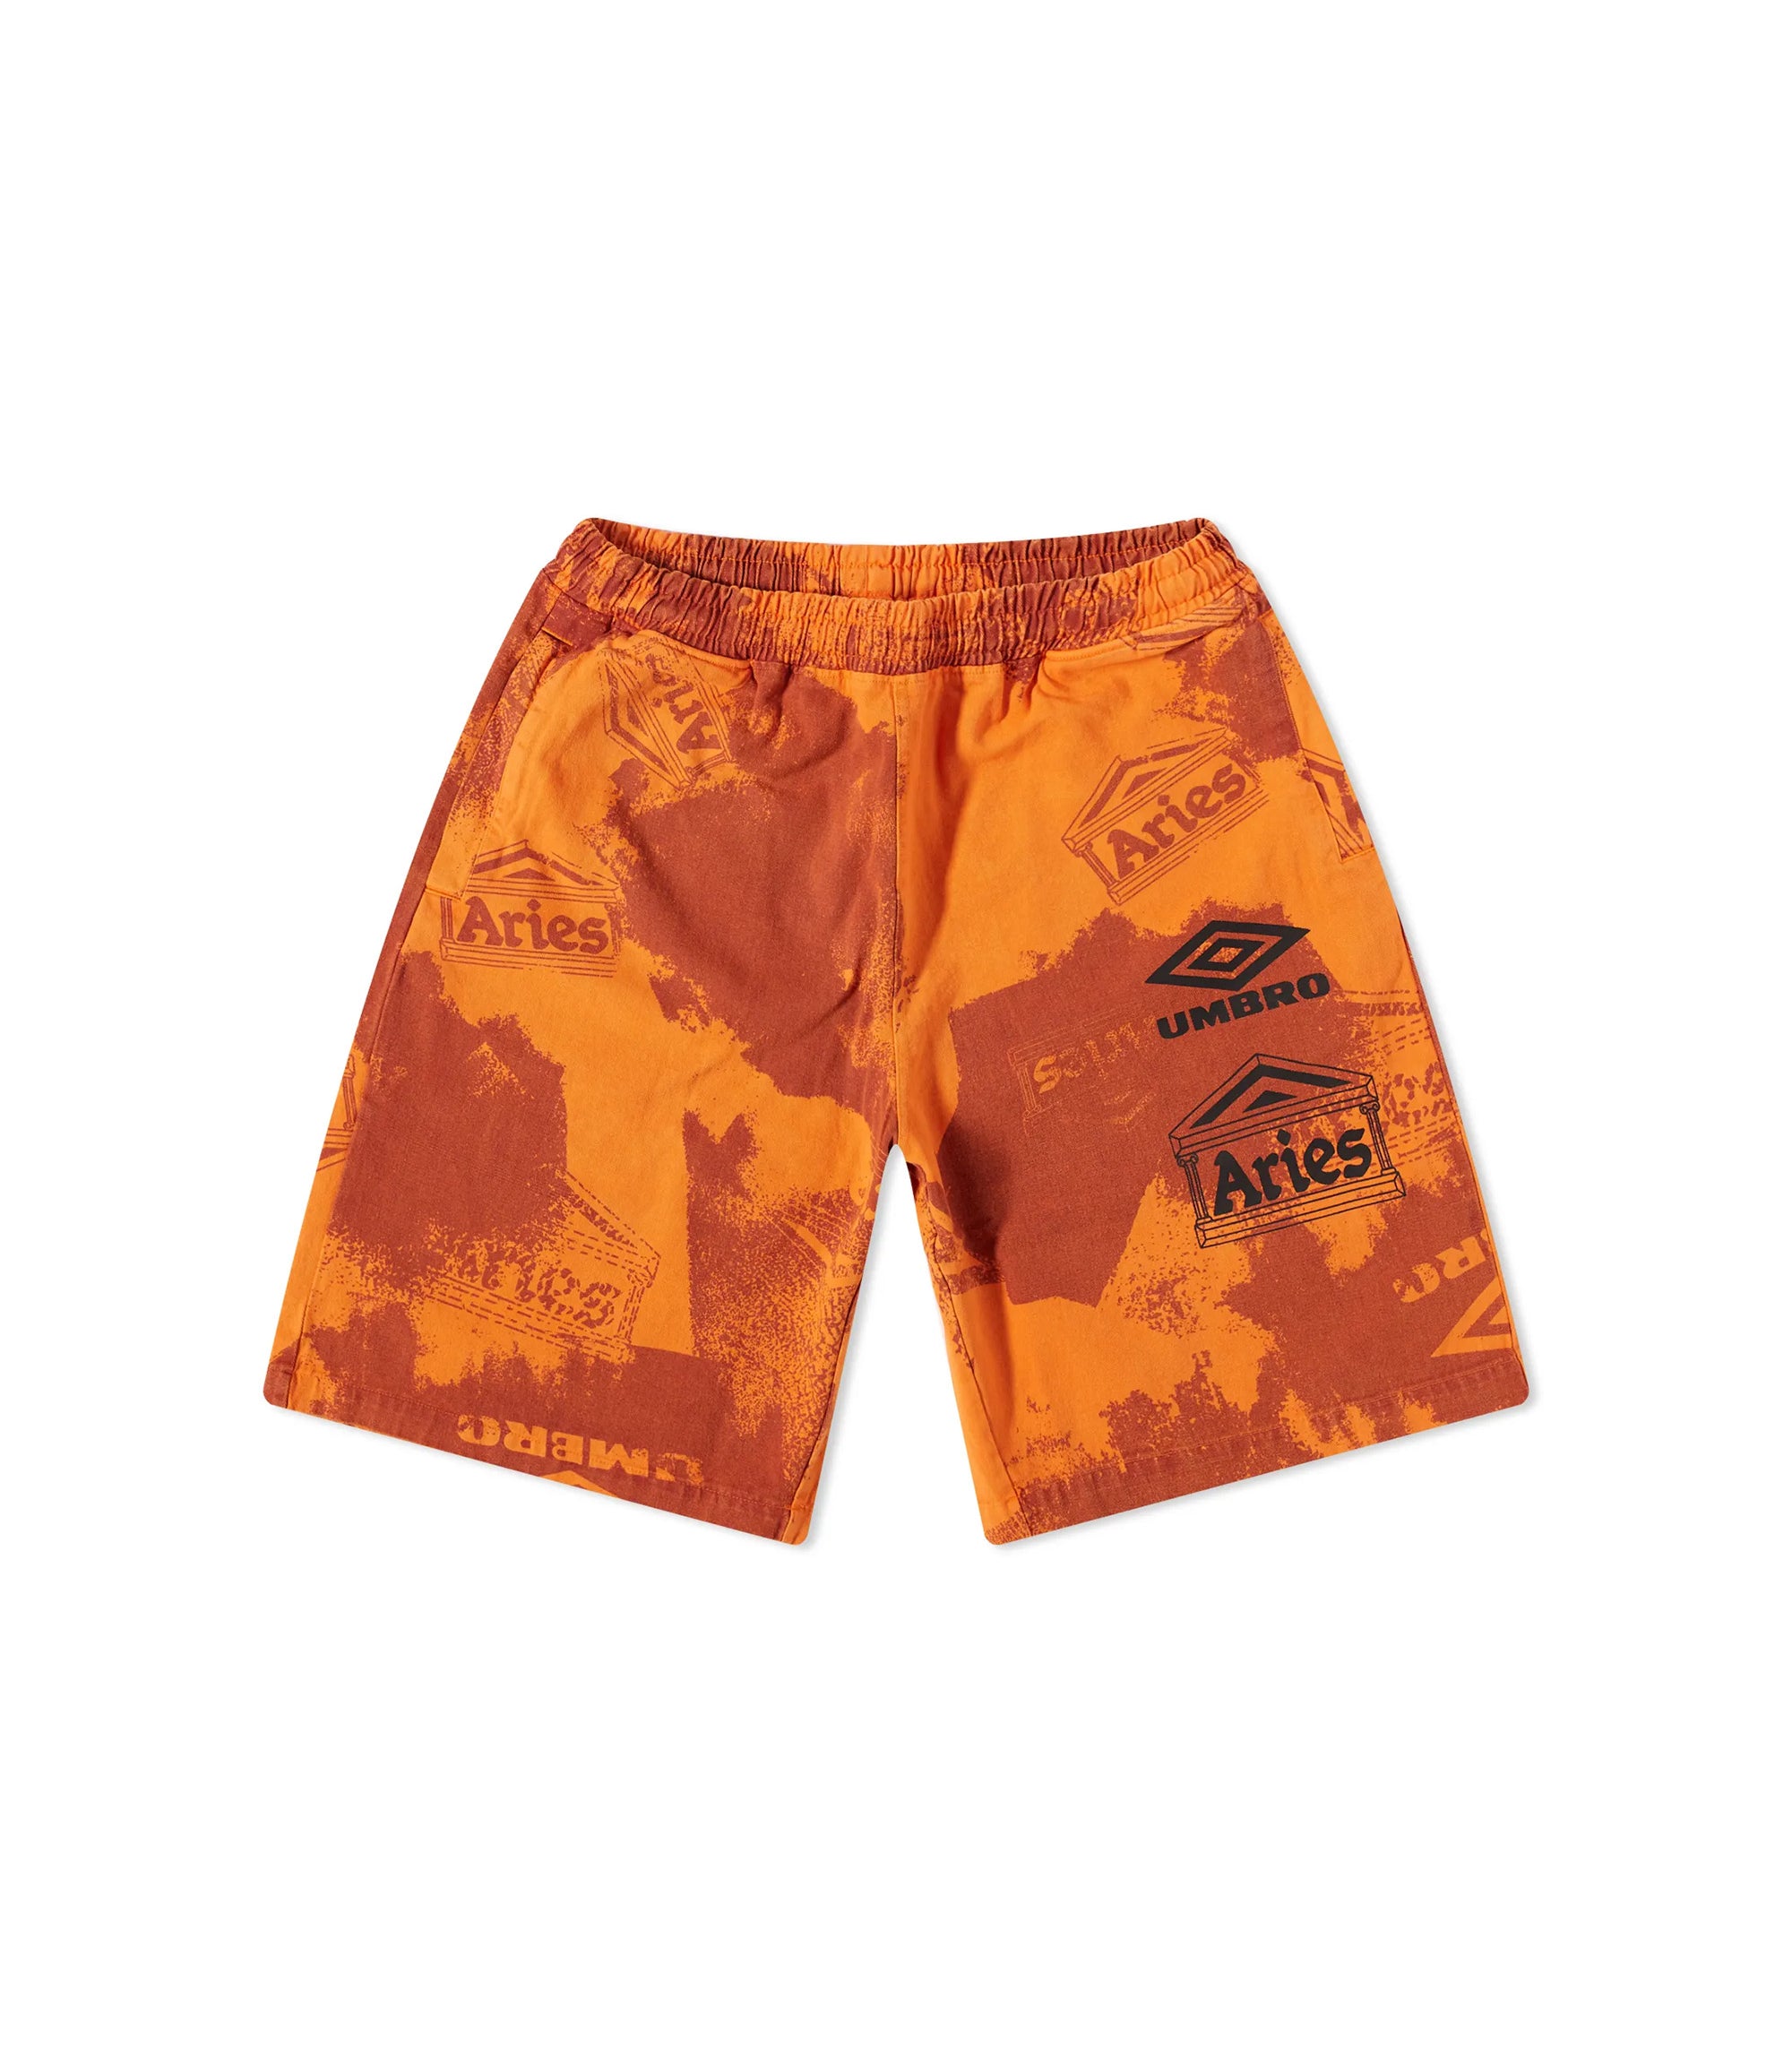 Umbro Pro 64 Shorts - Orange